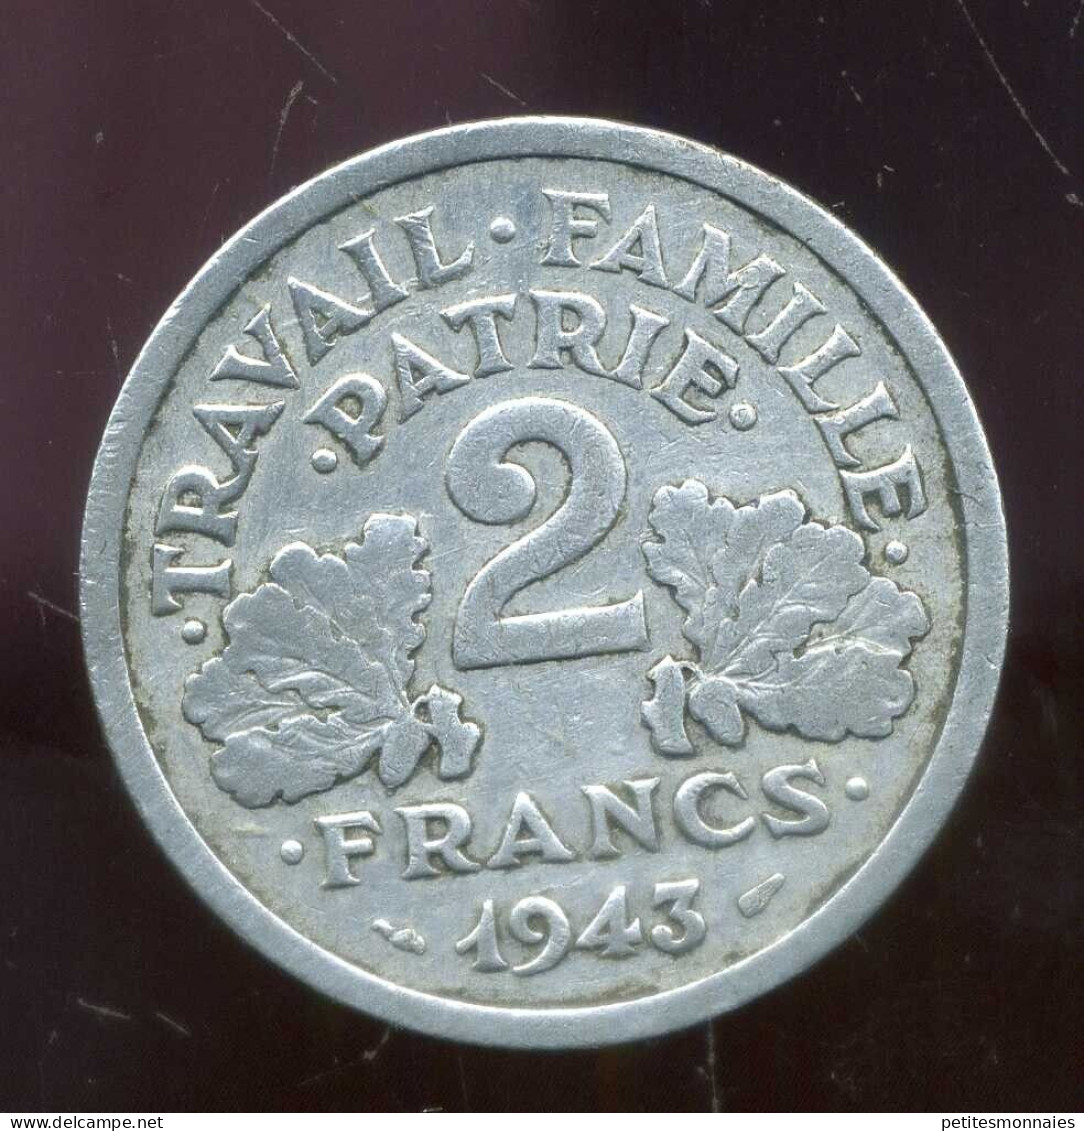 FRANCE 2  Francs BAZOR 1943 B  ( 690 ) E - 2 Francs